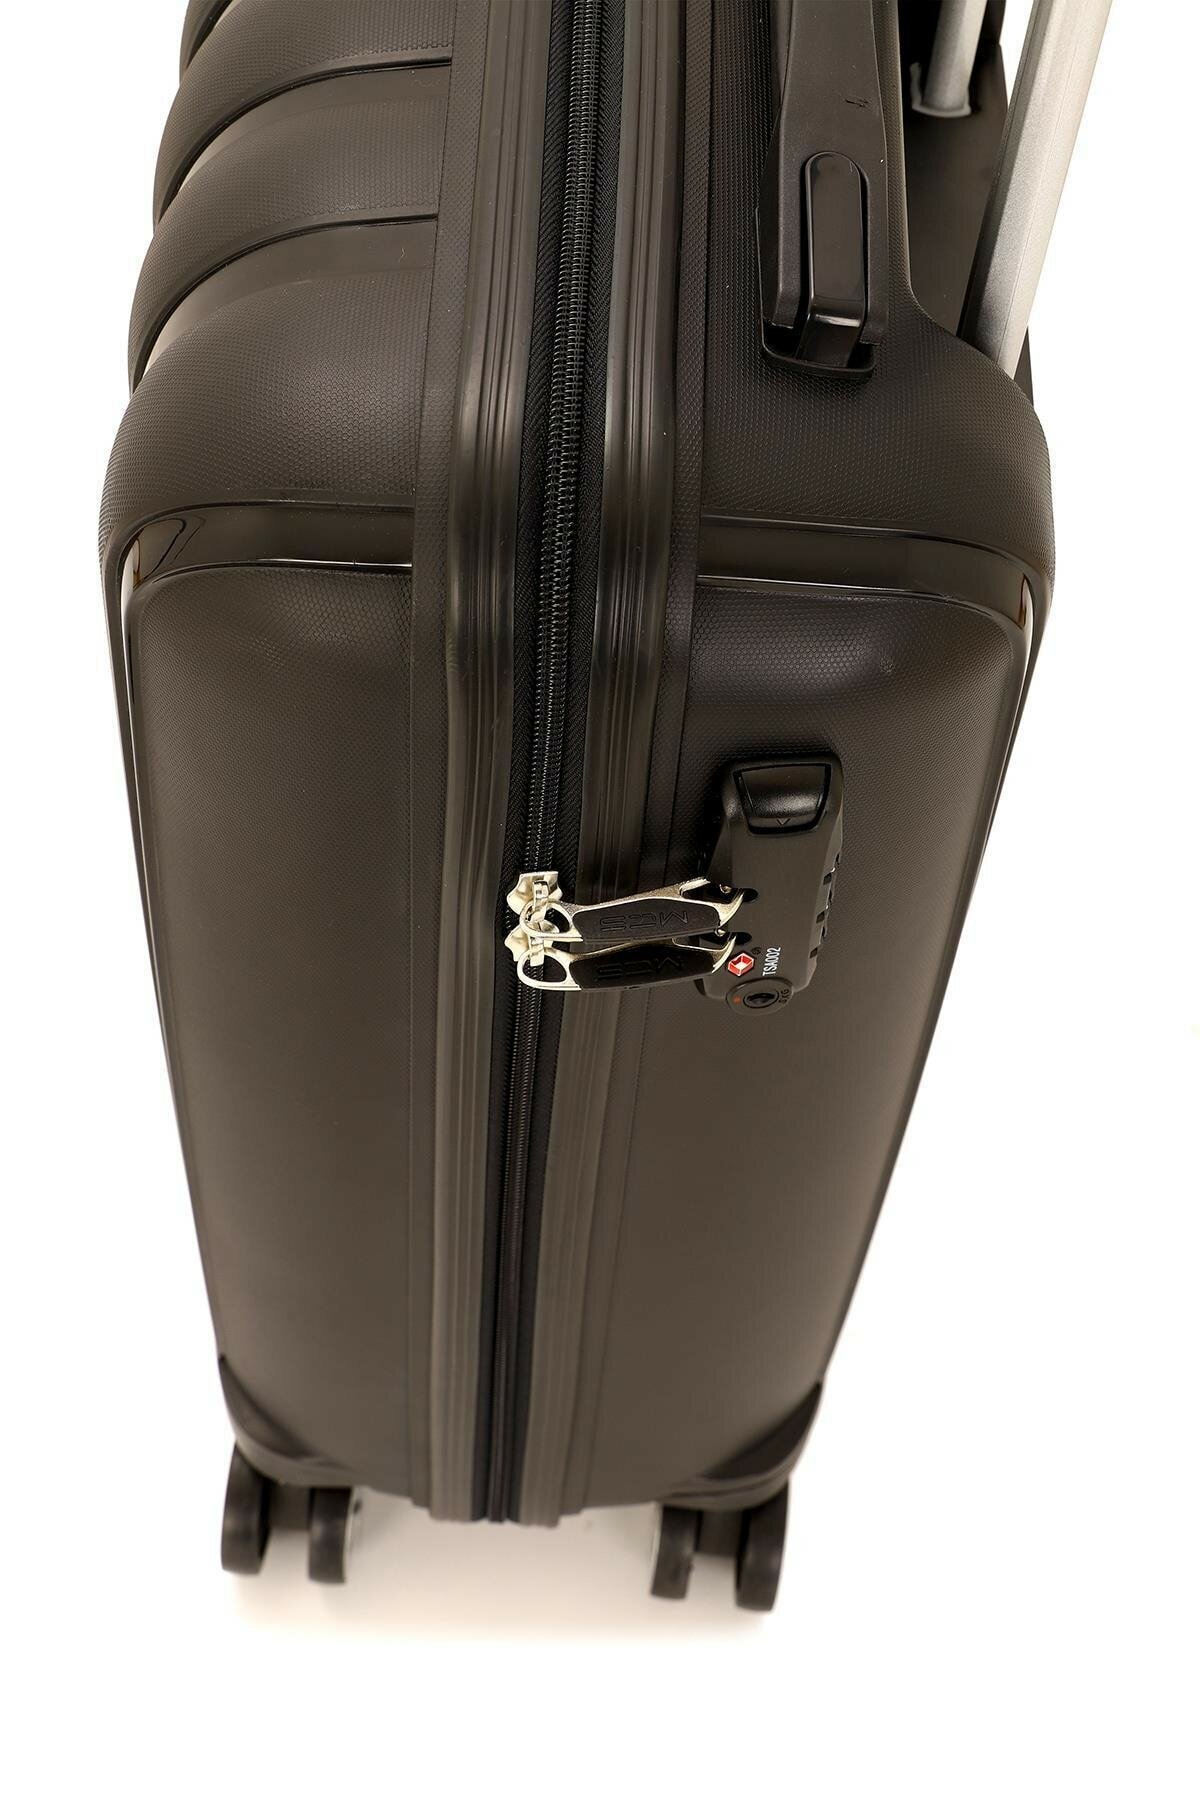 Маленький чемодан для ручьной клади из полипропилена MCS V305 S BLACK! Для 8-10 кг! - 3